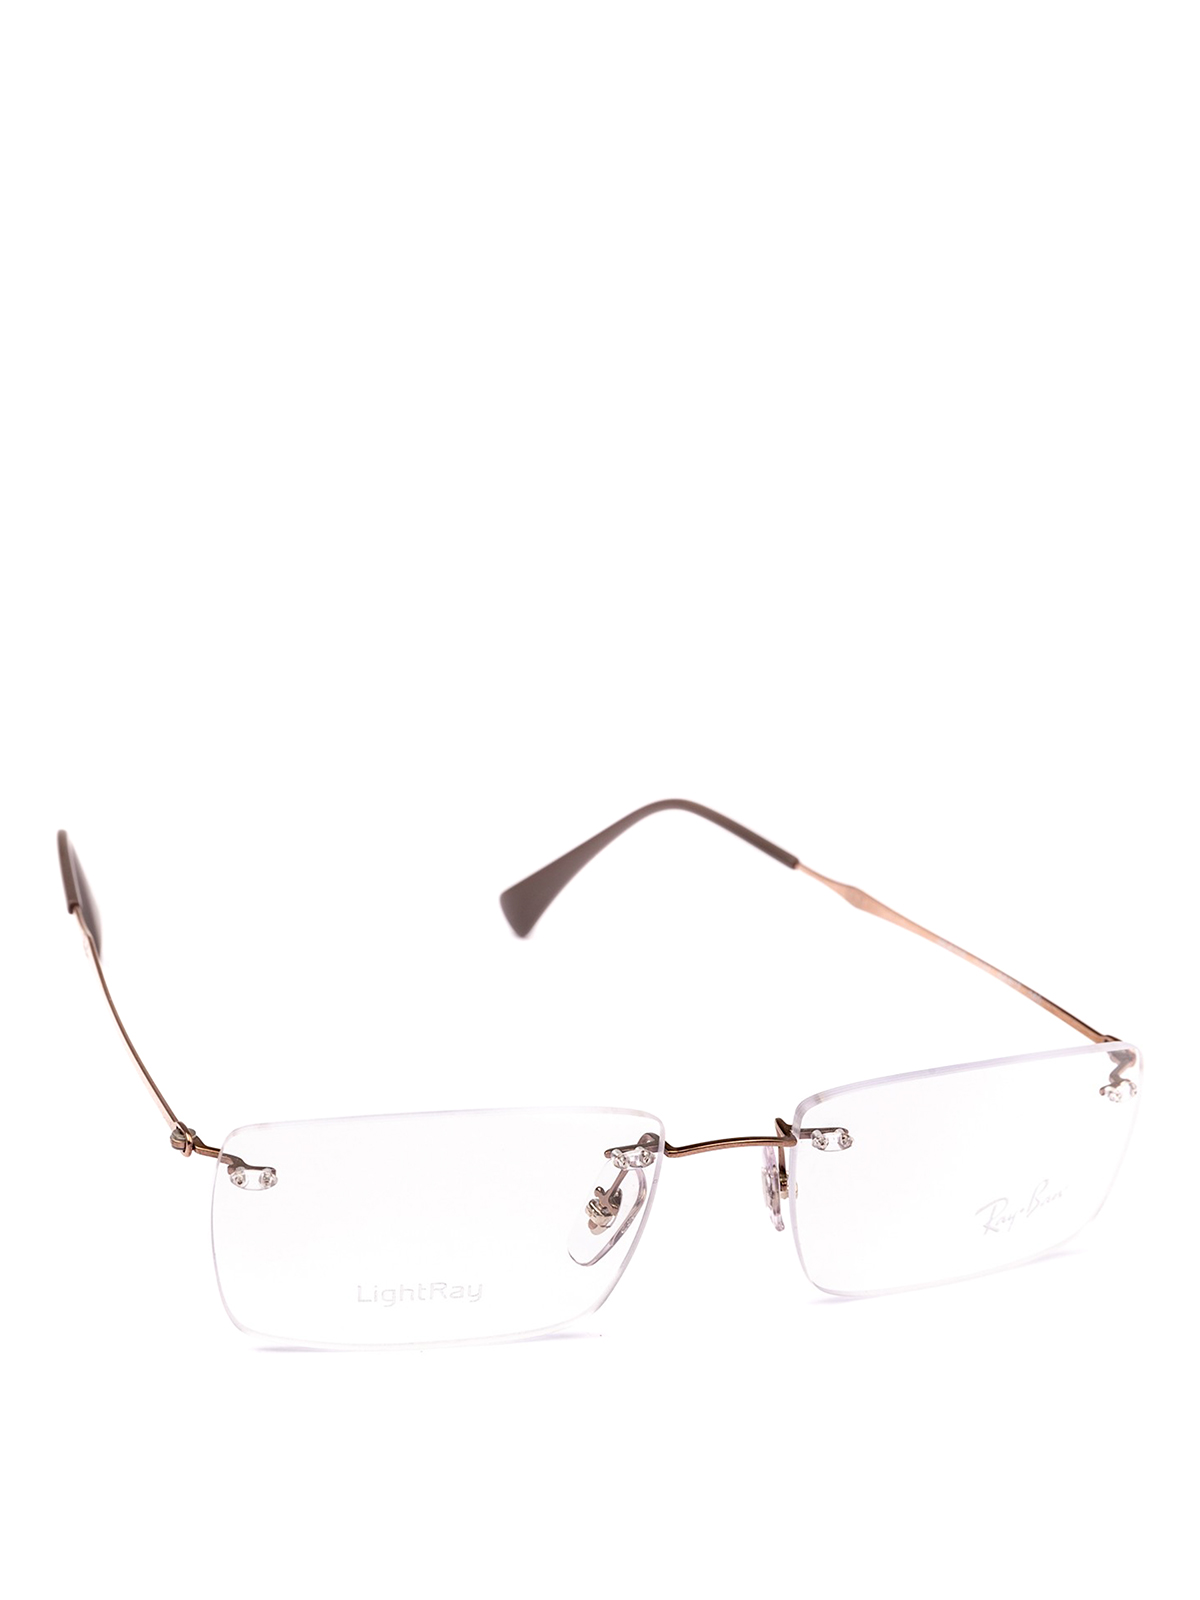 Glasses Ray Ban - Frameless squared lenses bronze glasses - RB87551131